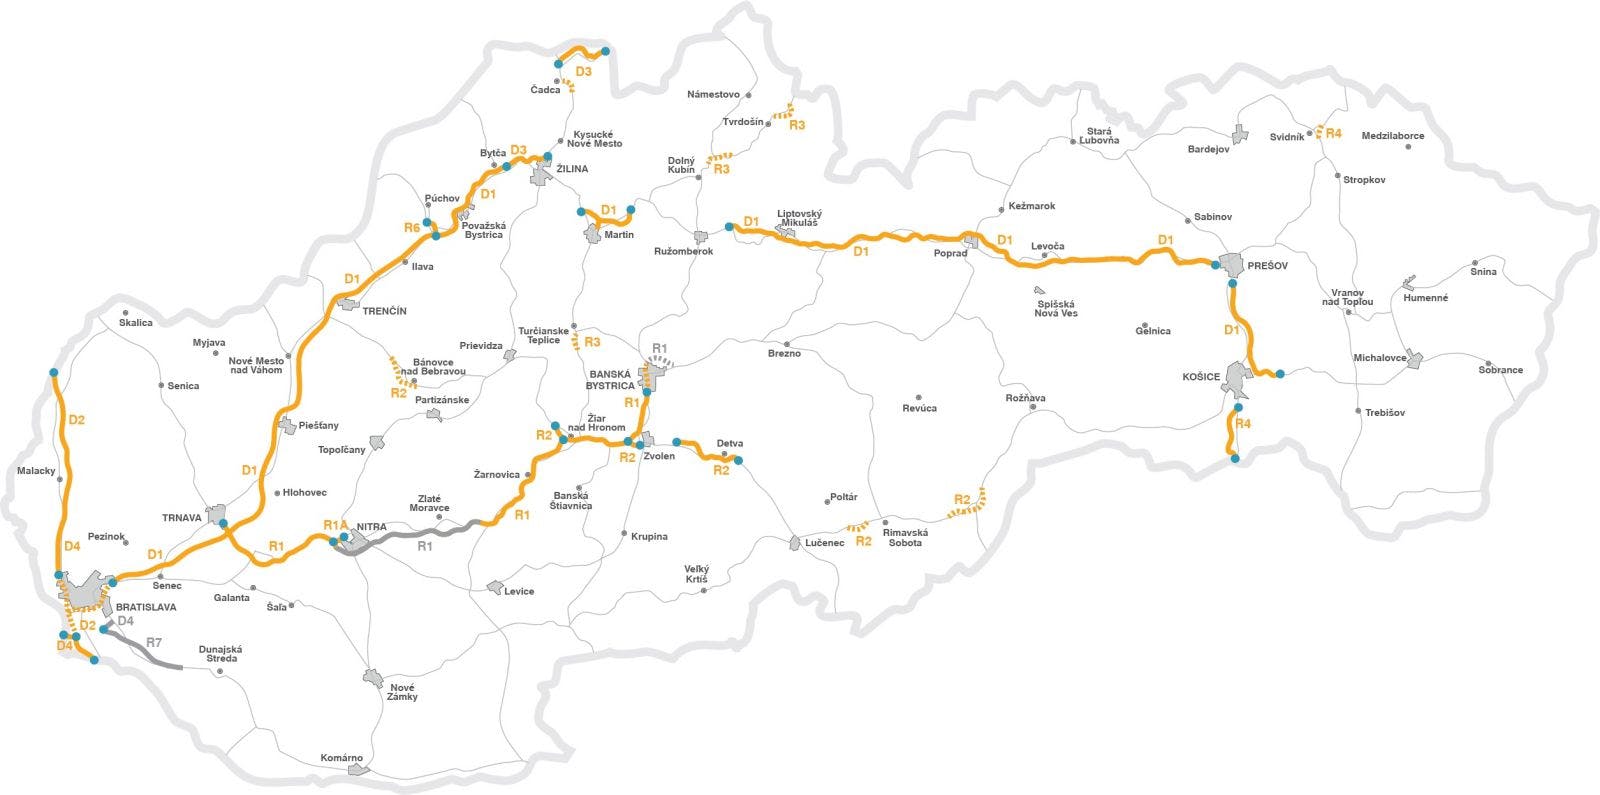 La mappa fornisce una panoramica delle strade a pedaggio in Slovacchia.